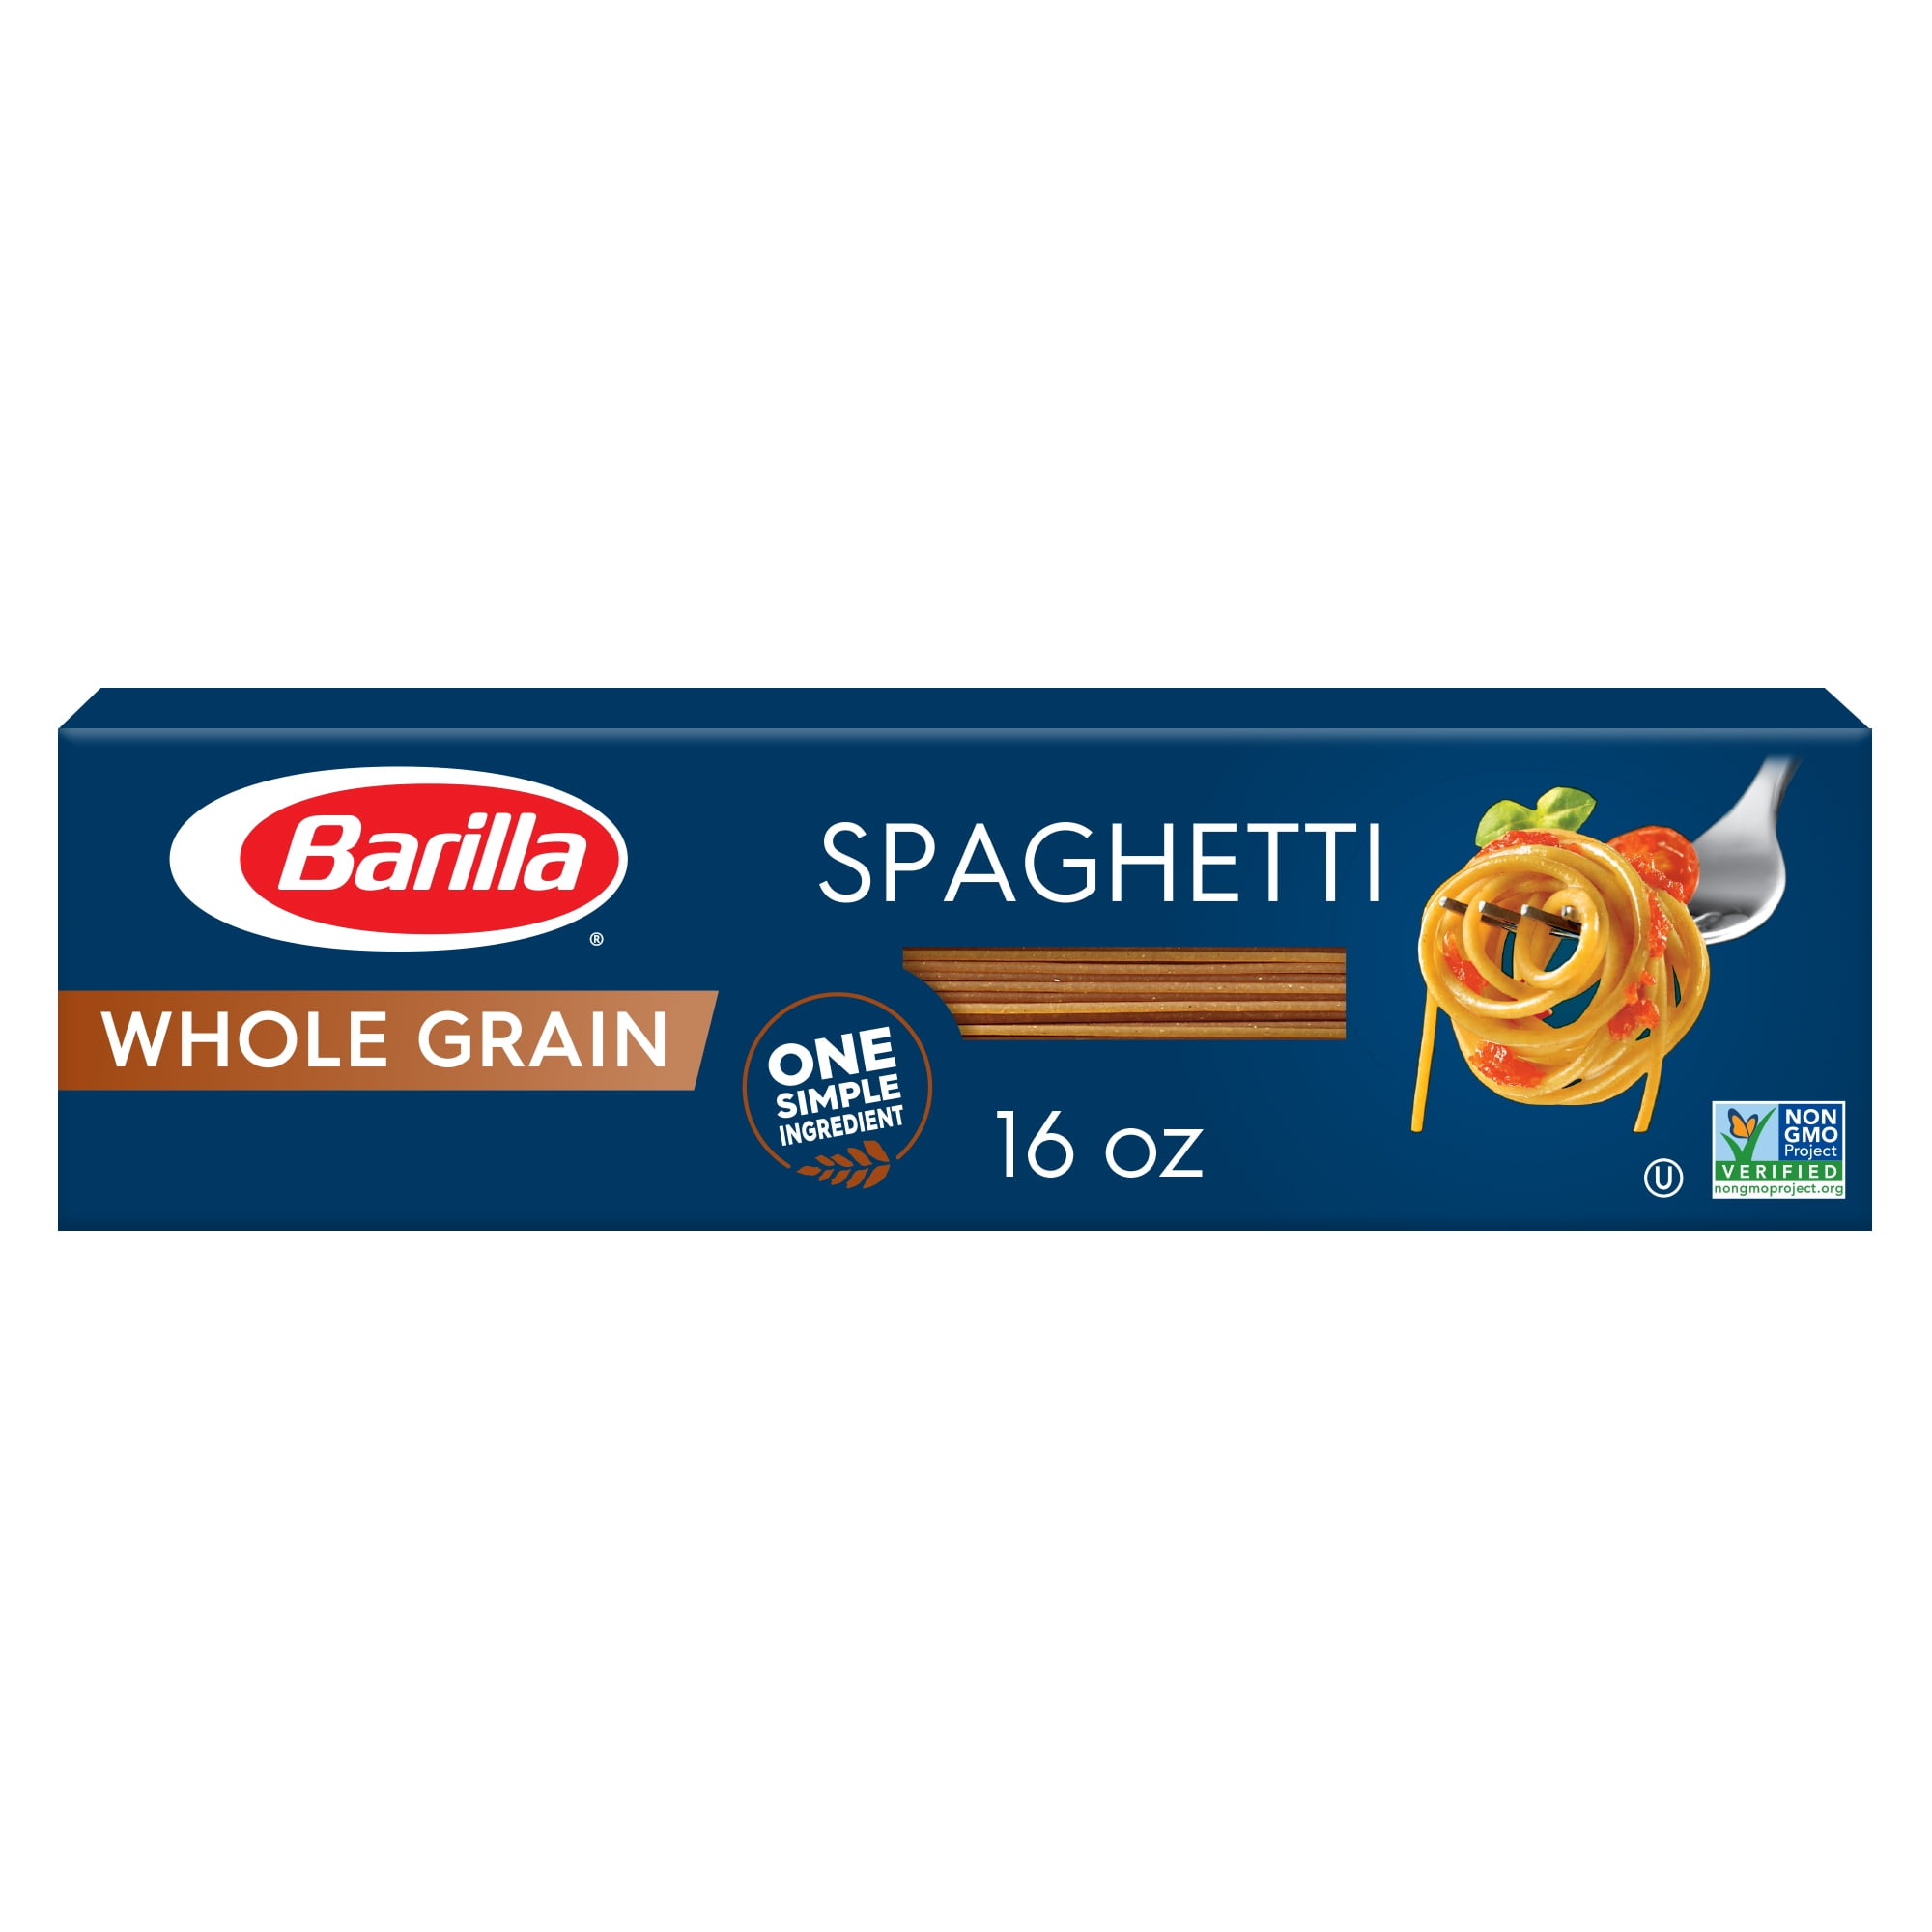 Barilla Whole Grain Spaghetti Pasta, 16 oz Box